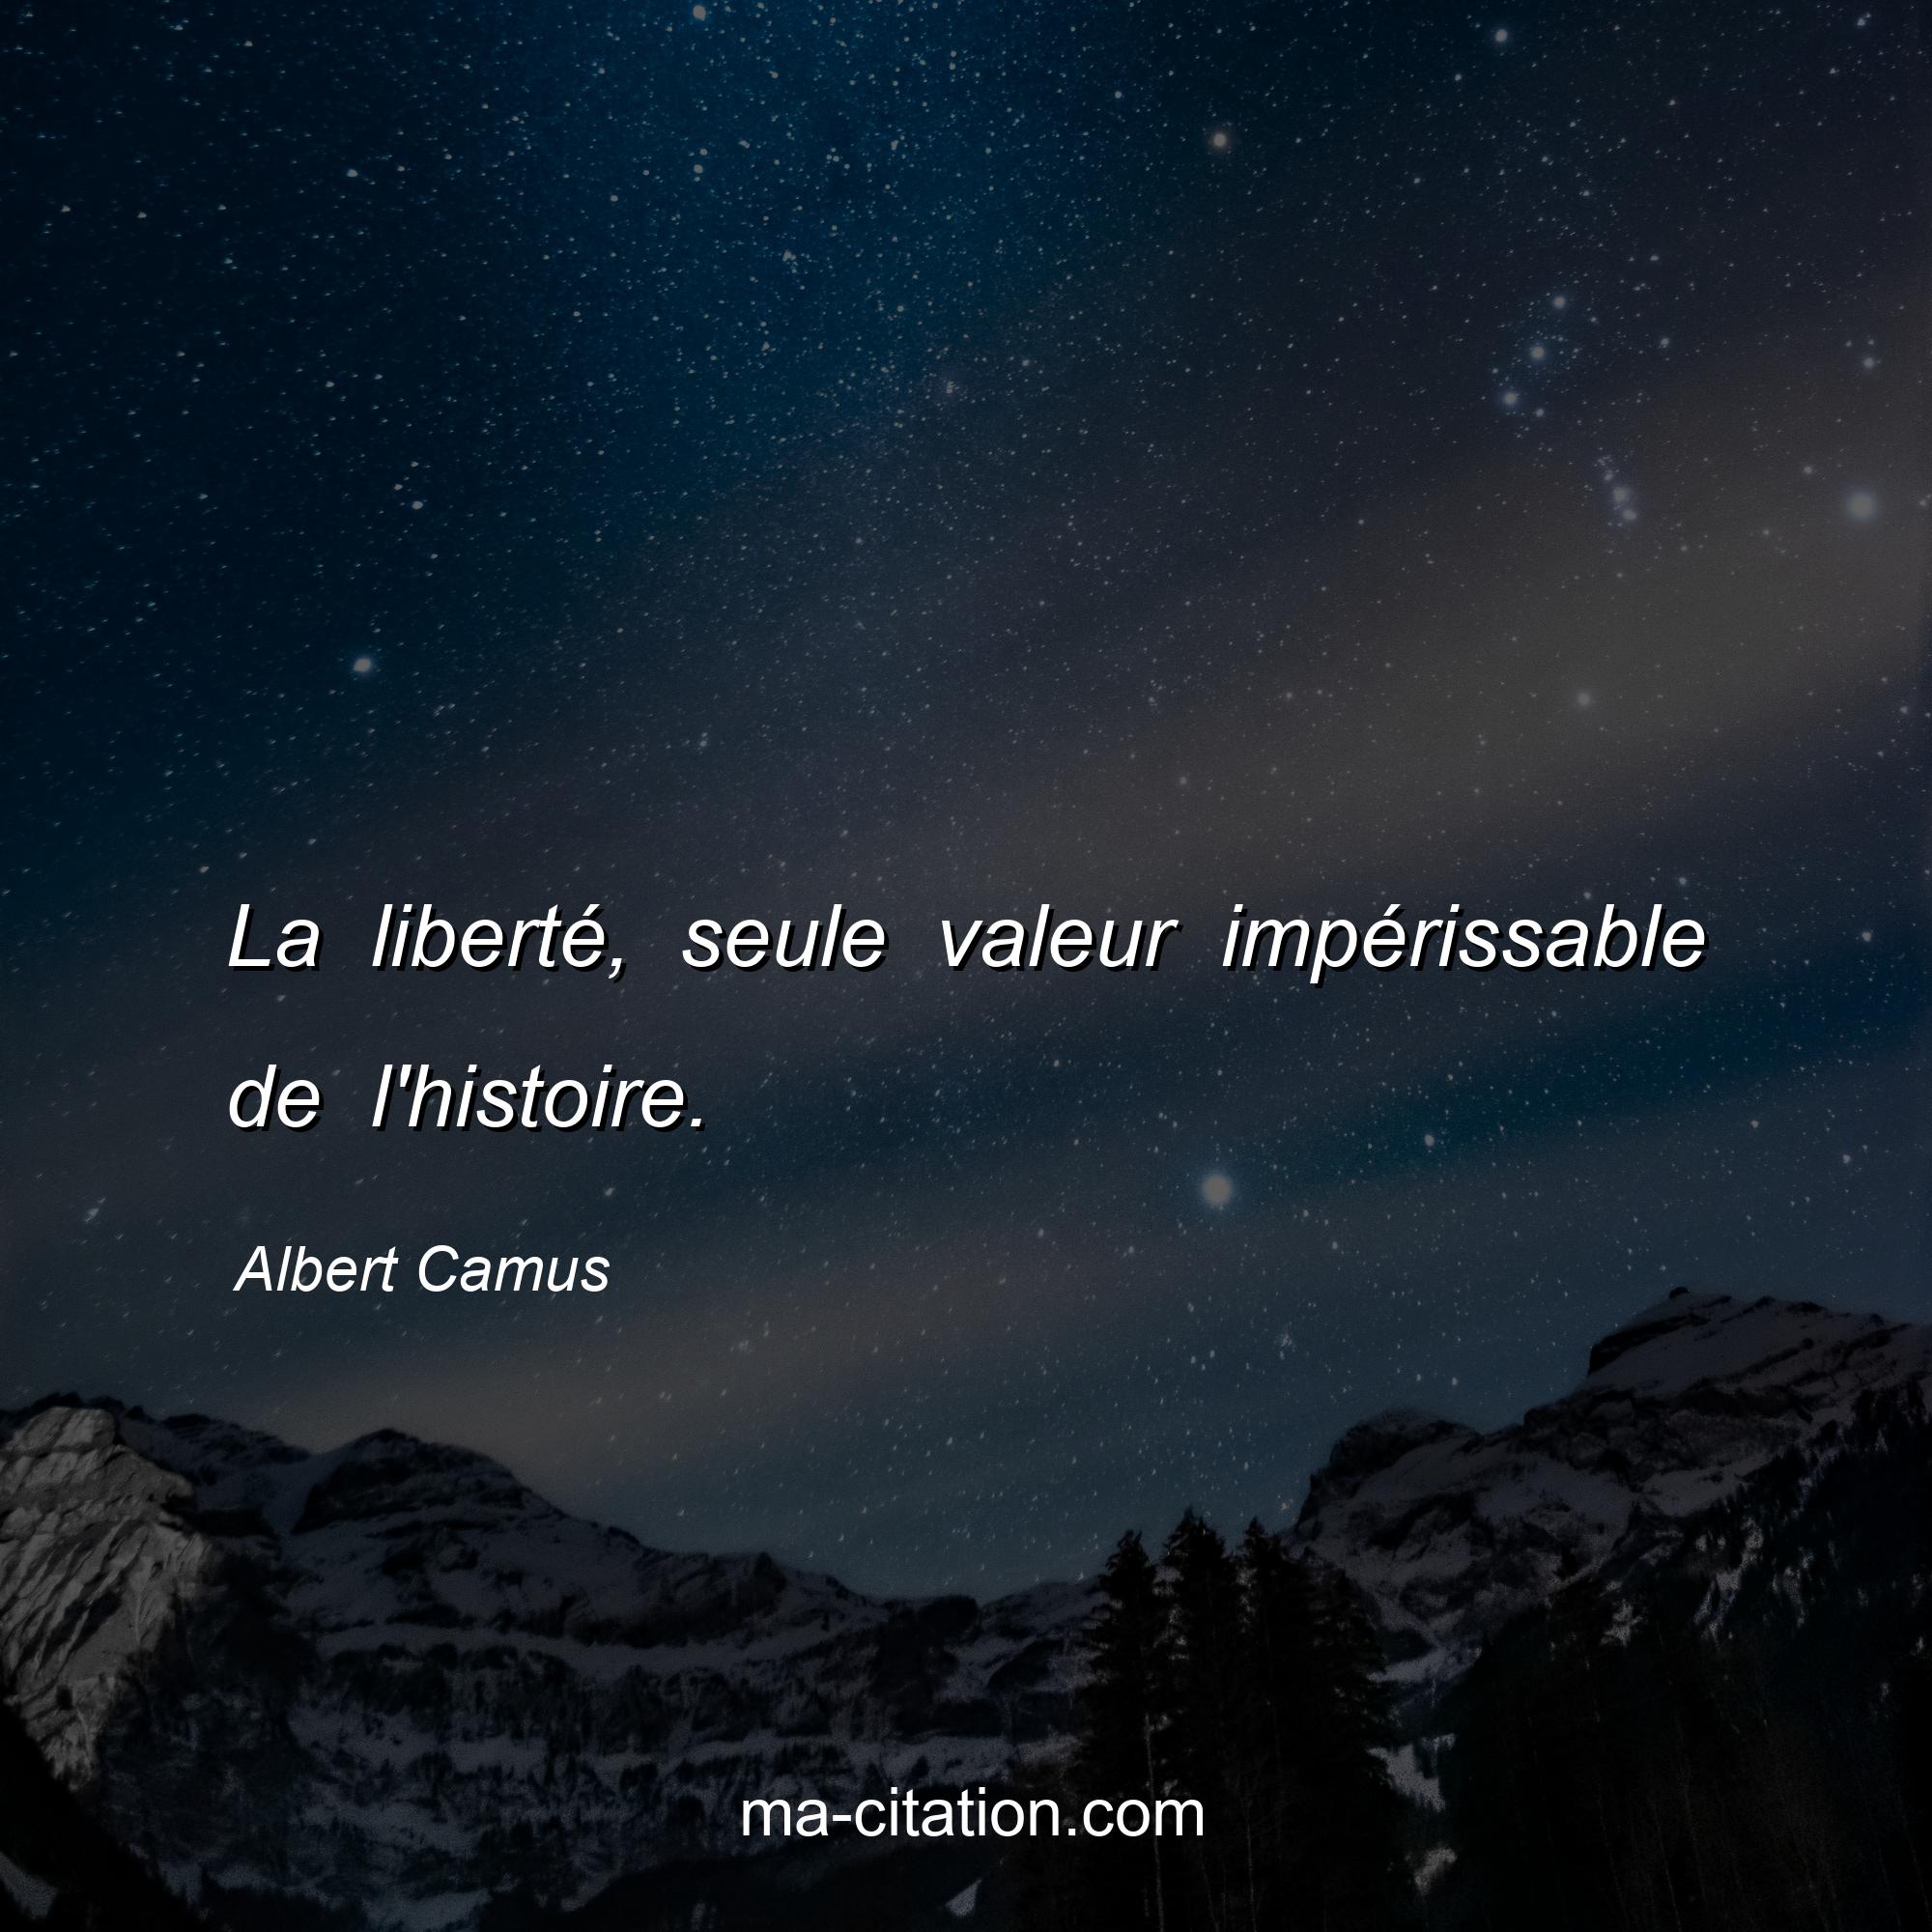 Albert Camus : La liberté, seule valeur impérissable de l'histoire.